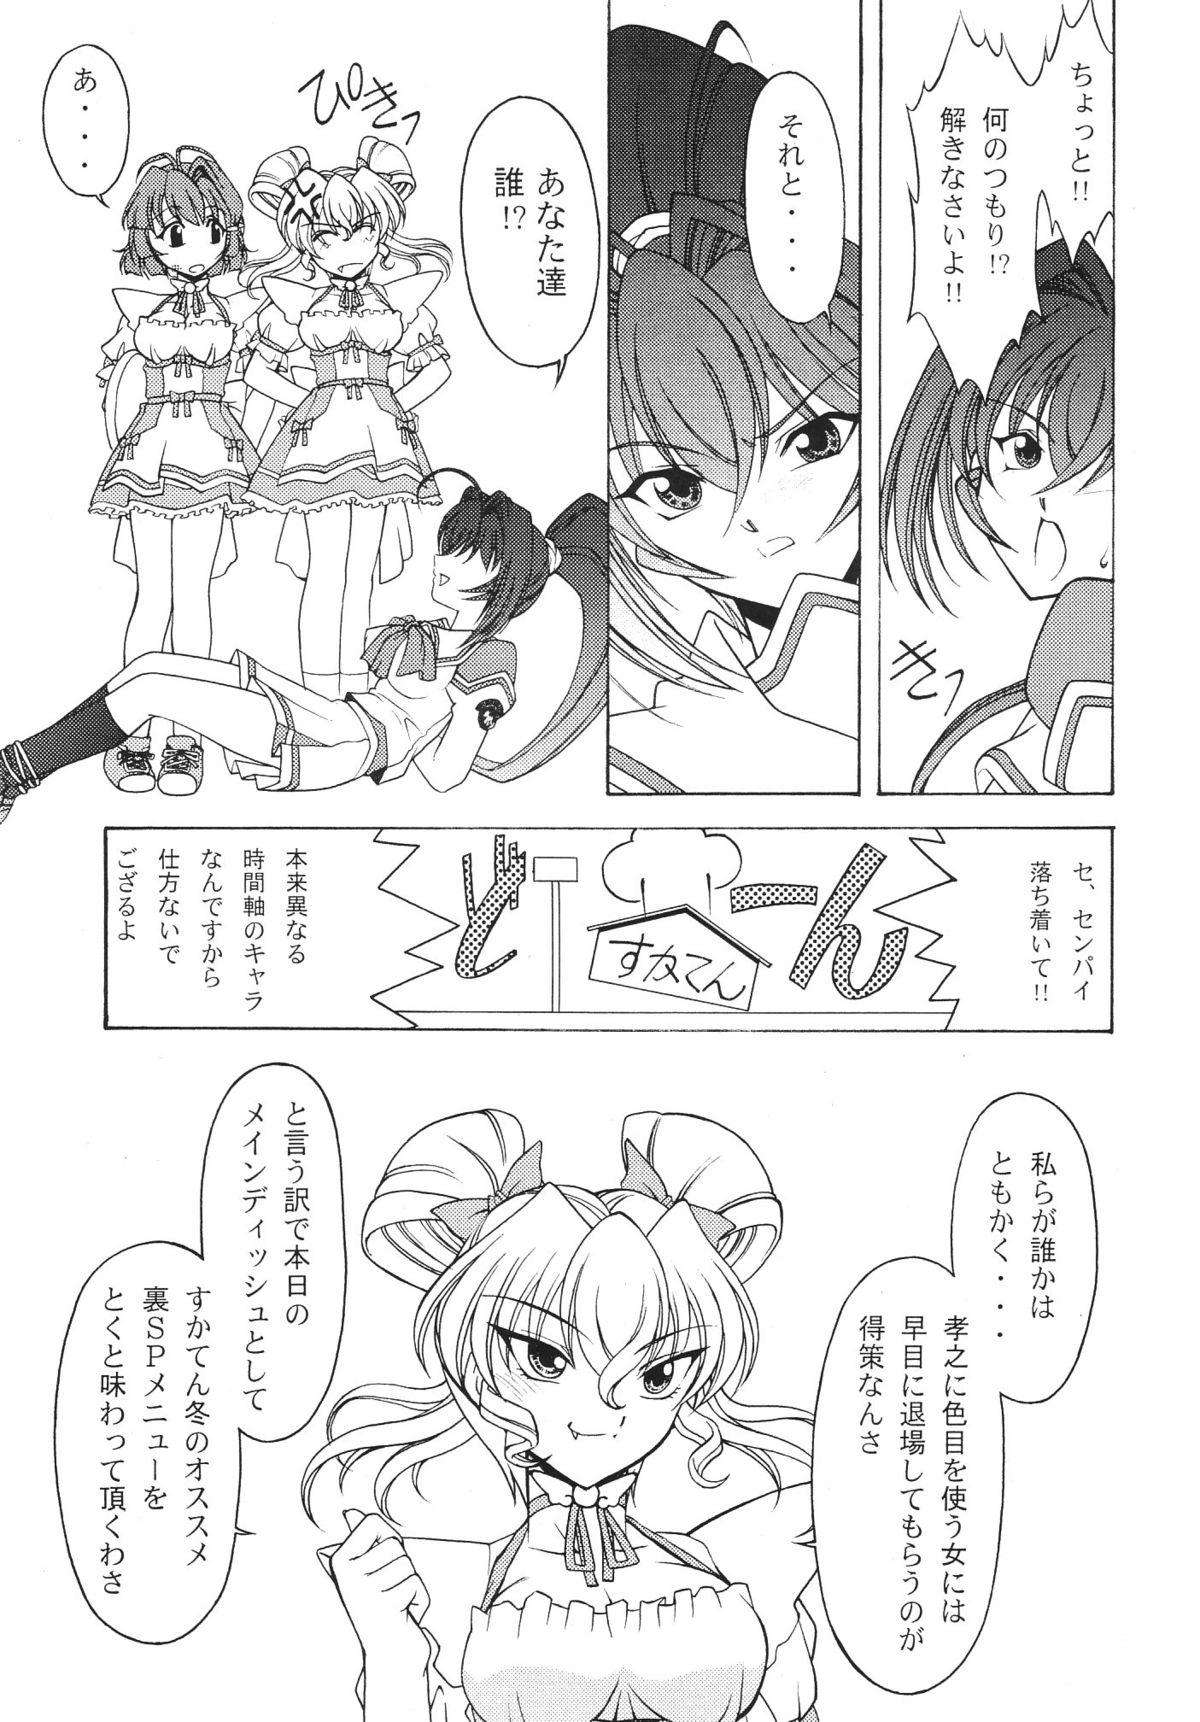 Rica Rose Water 22 EXCEED - Kimi ga nozomu eien Hetero - Page 8